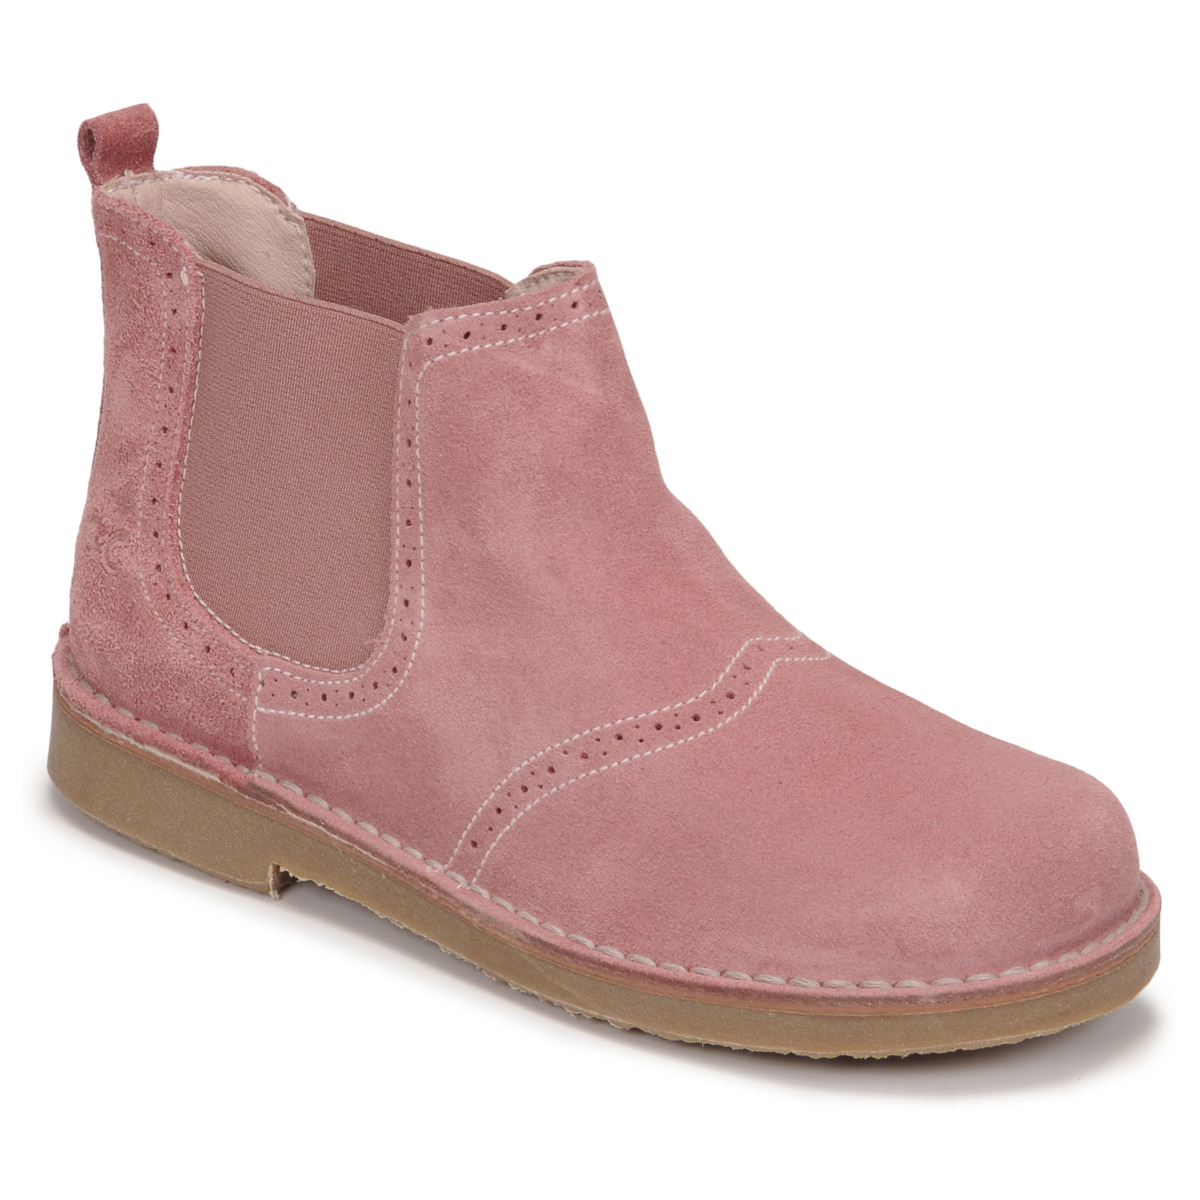 Schuhe Kinder Boots Citrouille et Compagnie NEW 87 Rosa